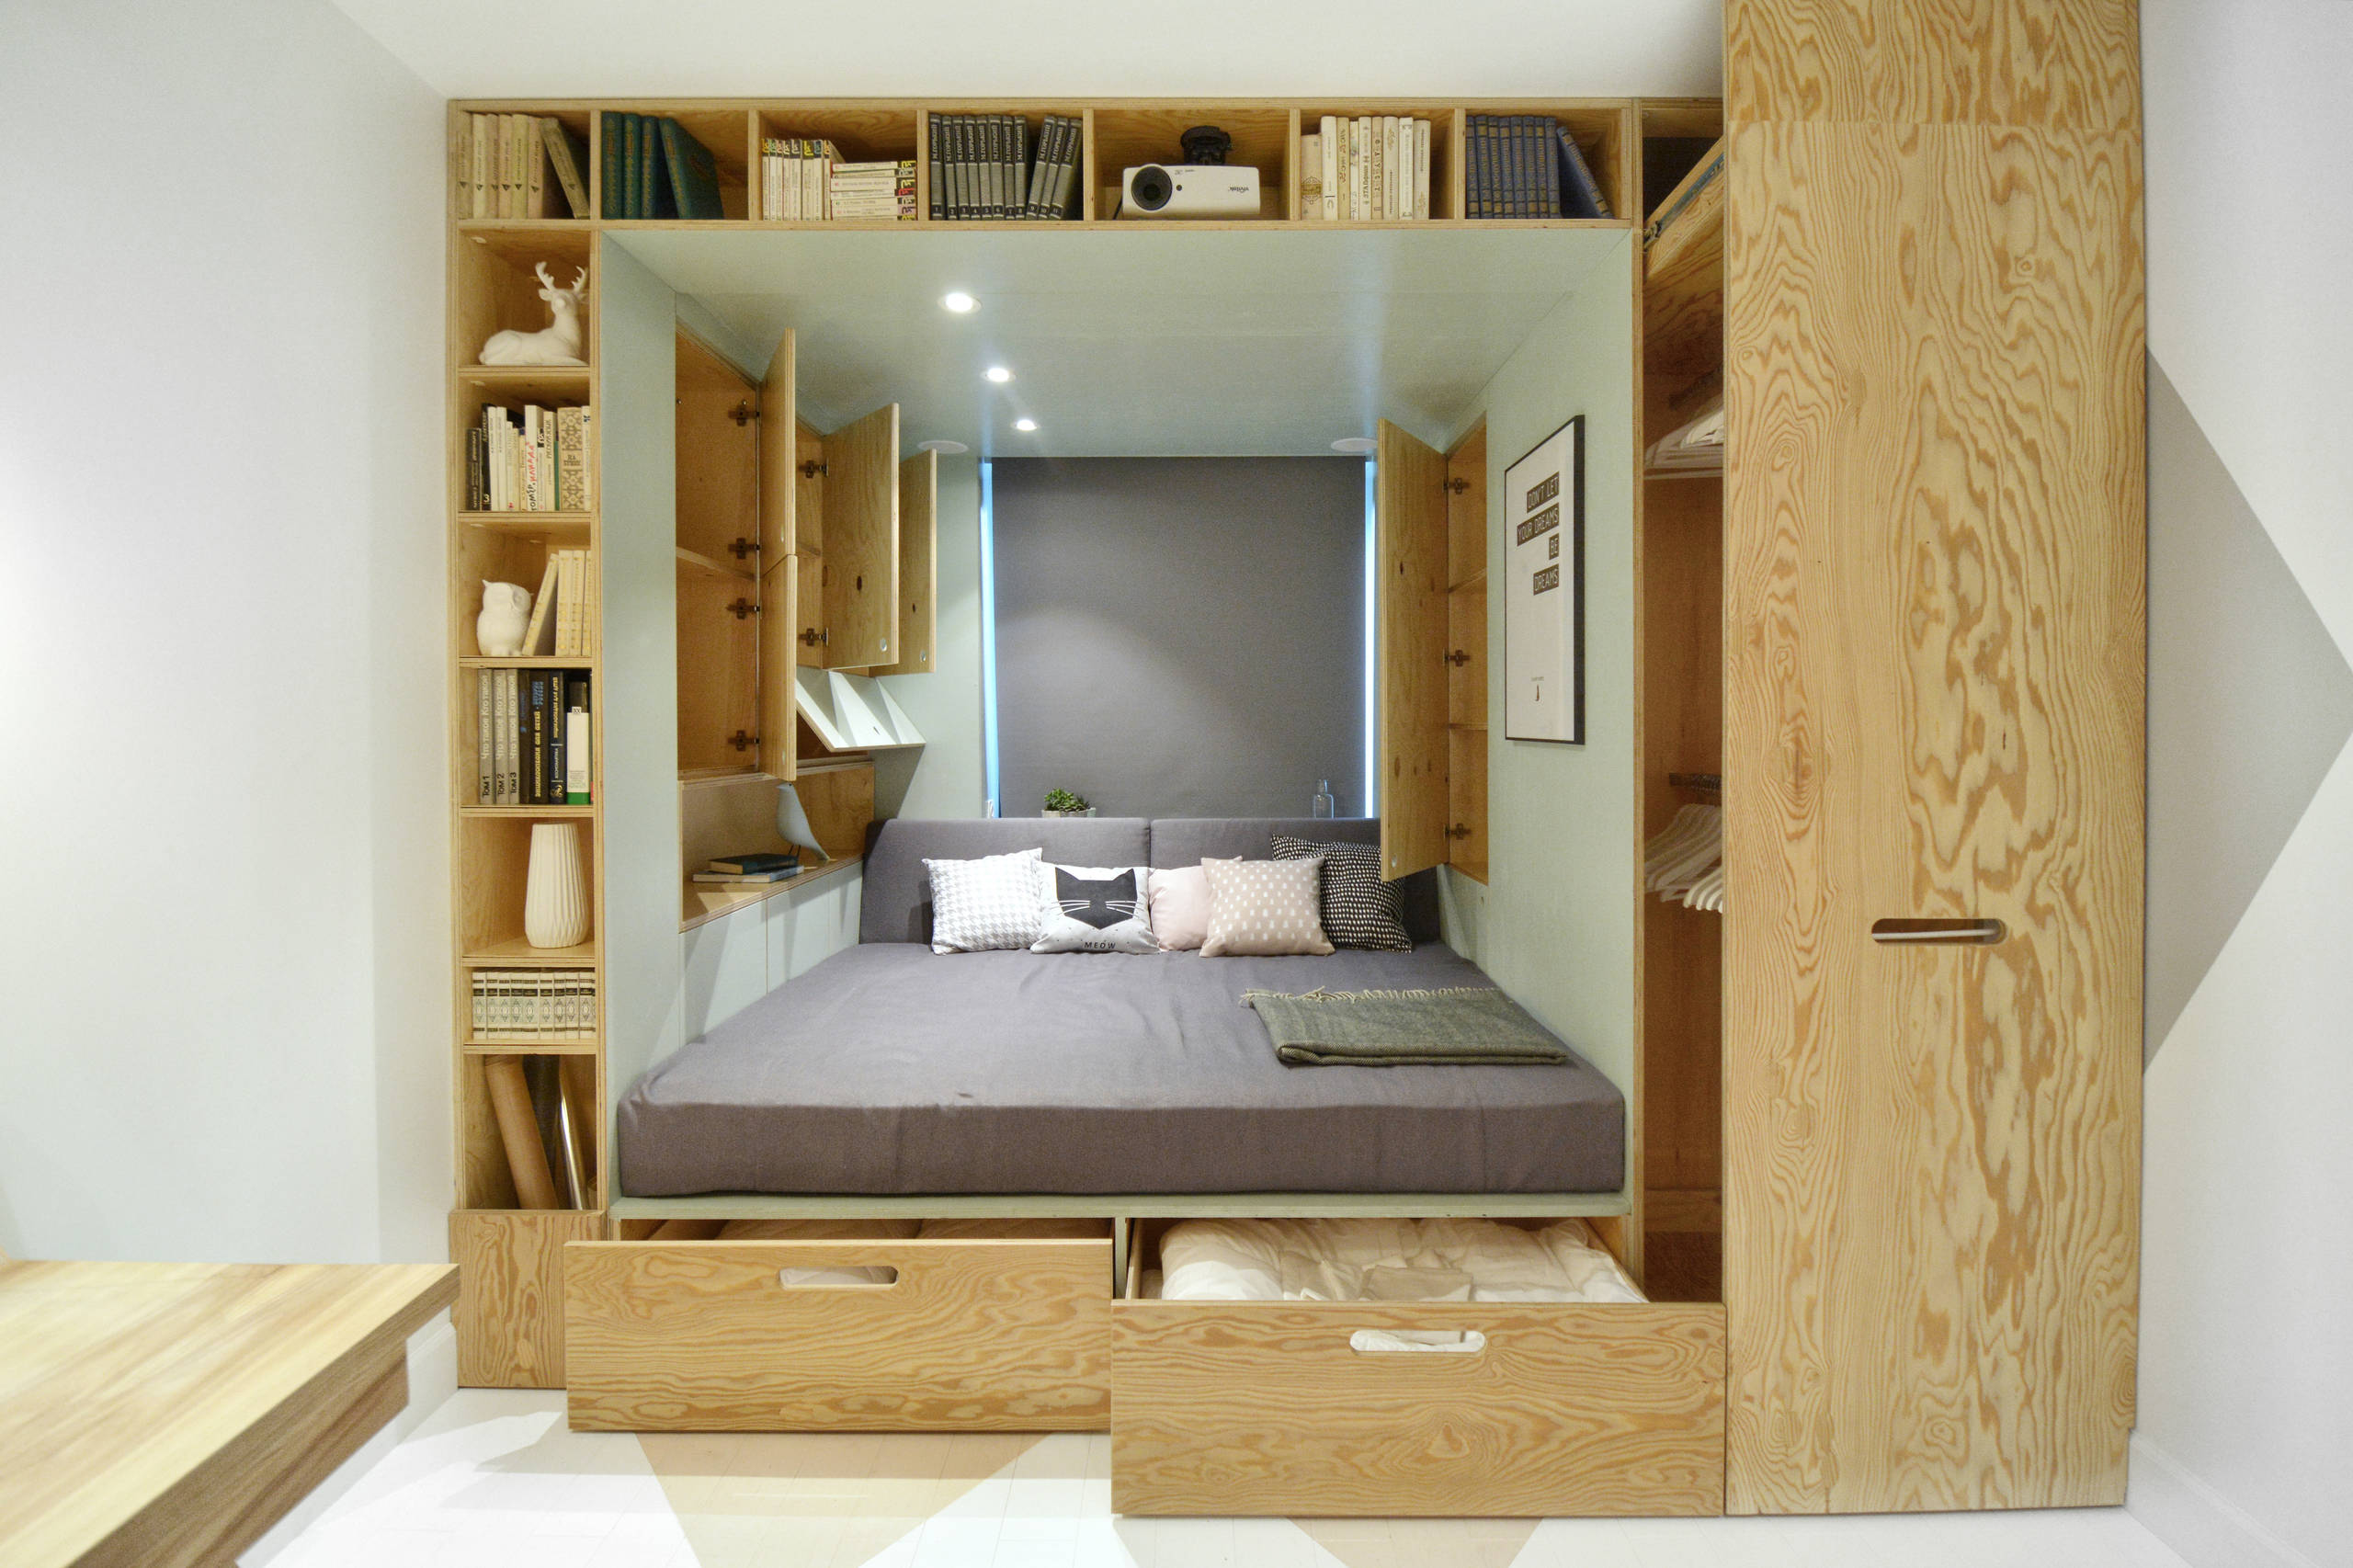 Планировка: Как обустроить узкую комнату с одним окном идеи для дома,интерьер и дизайн